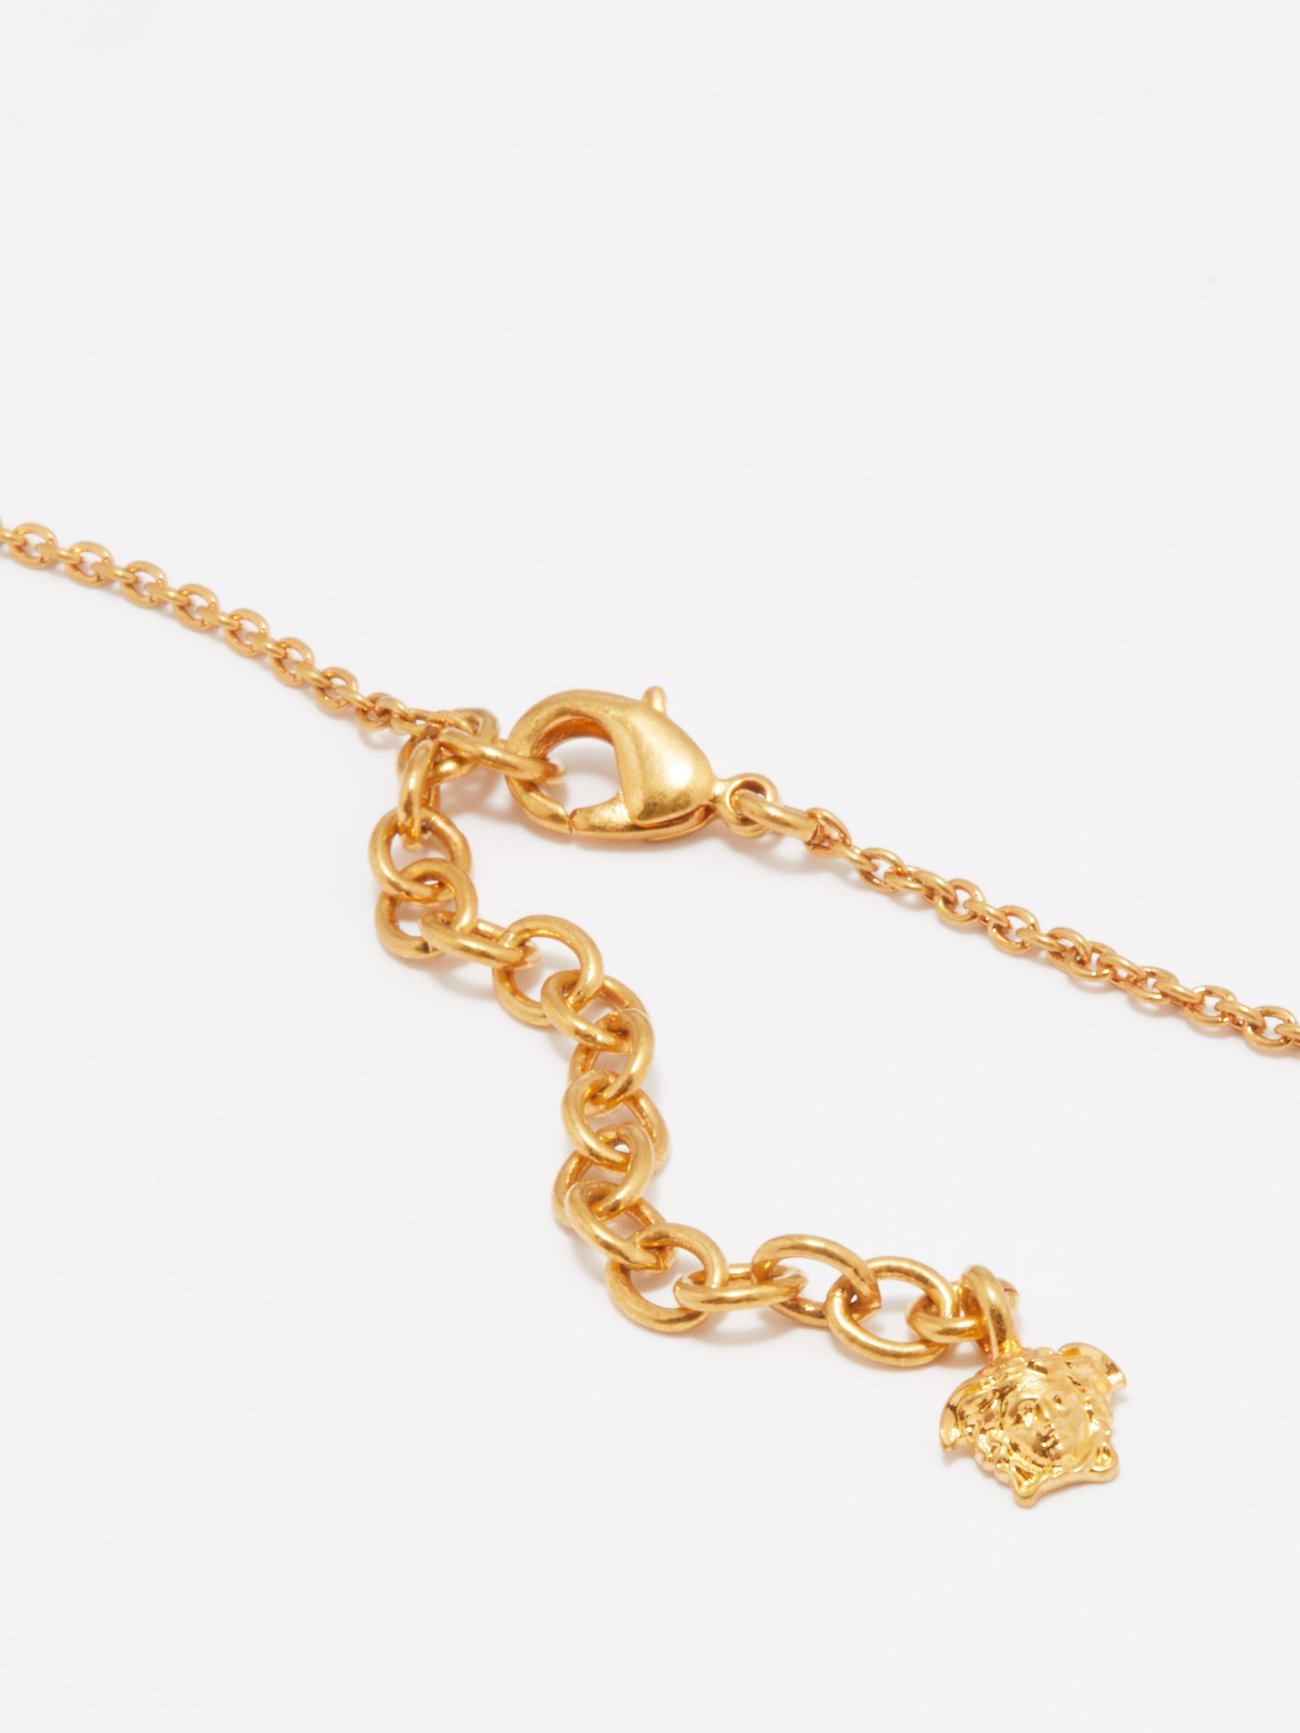 Gold Medusa-pendant enamelled-pendant necklace, Versace